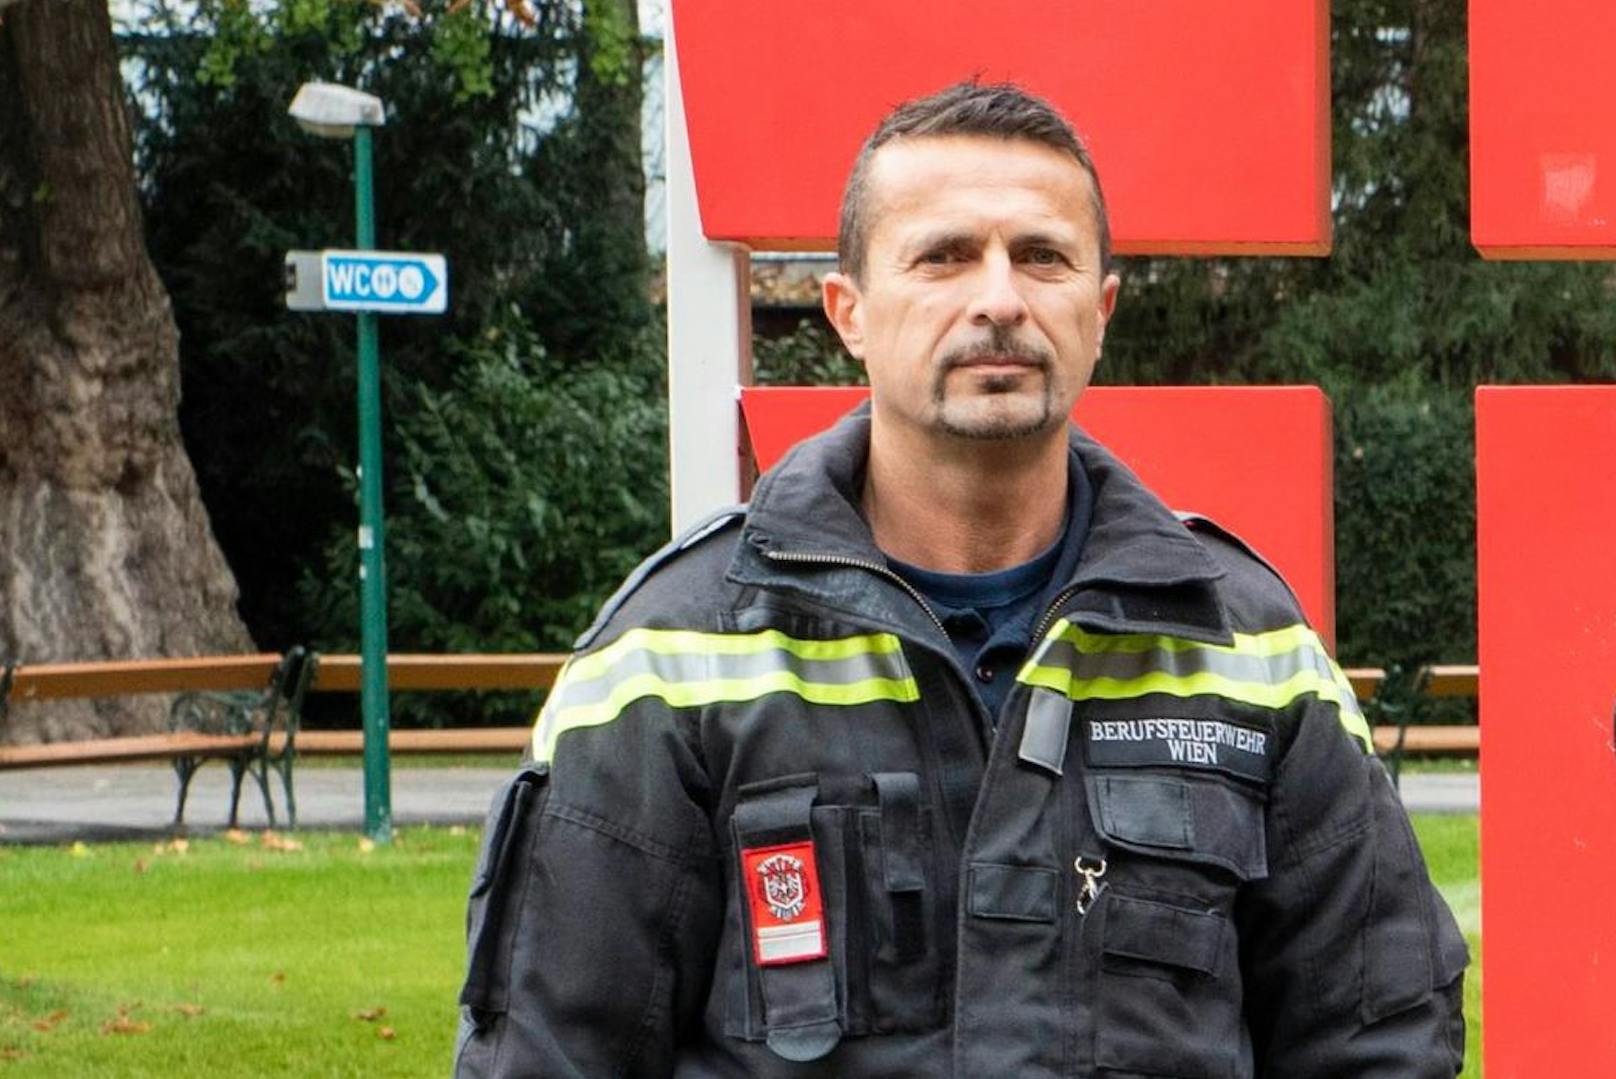 Josef R. (52) ist seit 27 Jahren bei der Rathauswache. Jetzt fasste der Berufsfeuerwehrmann beim Training mit einem Freund einen flüchtenden Schlepper.